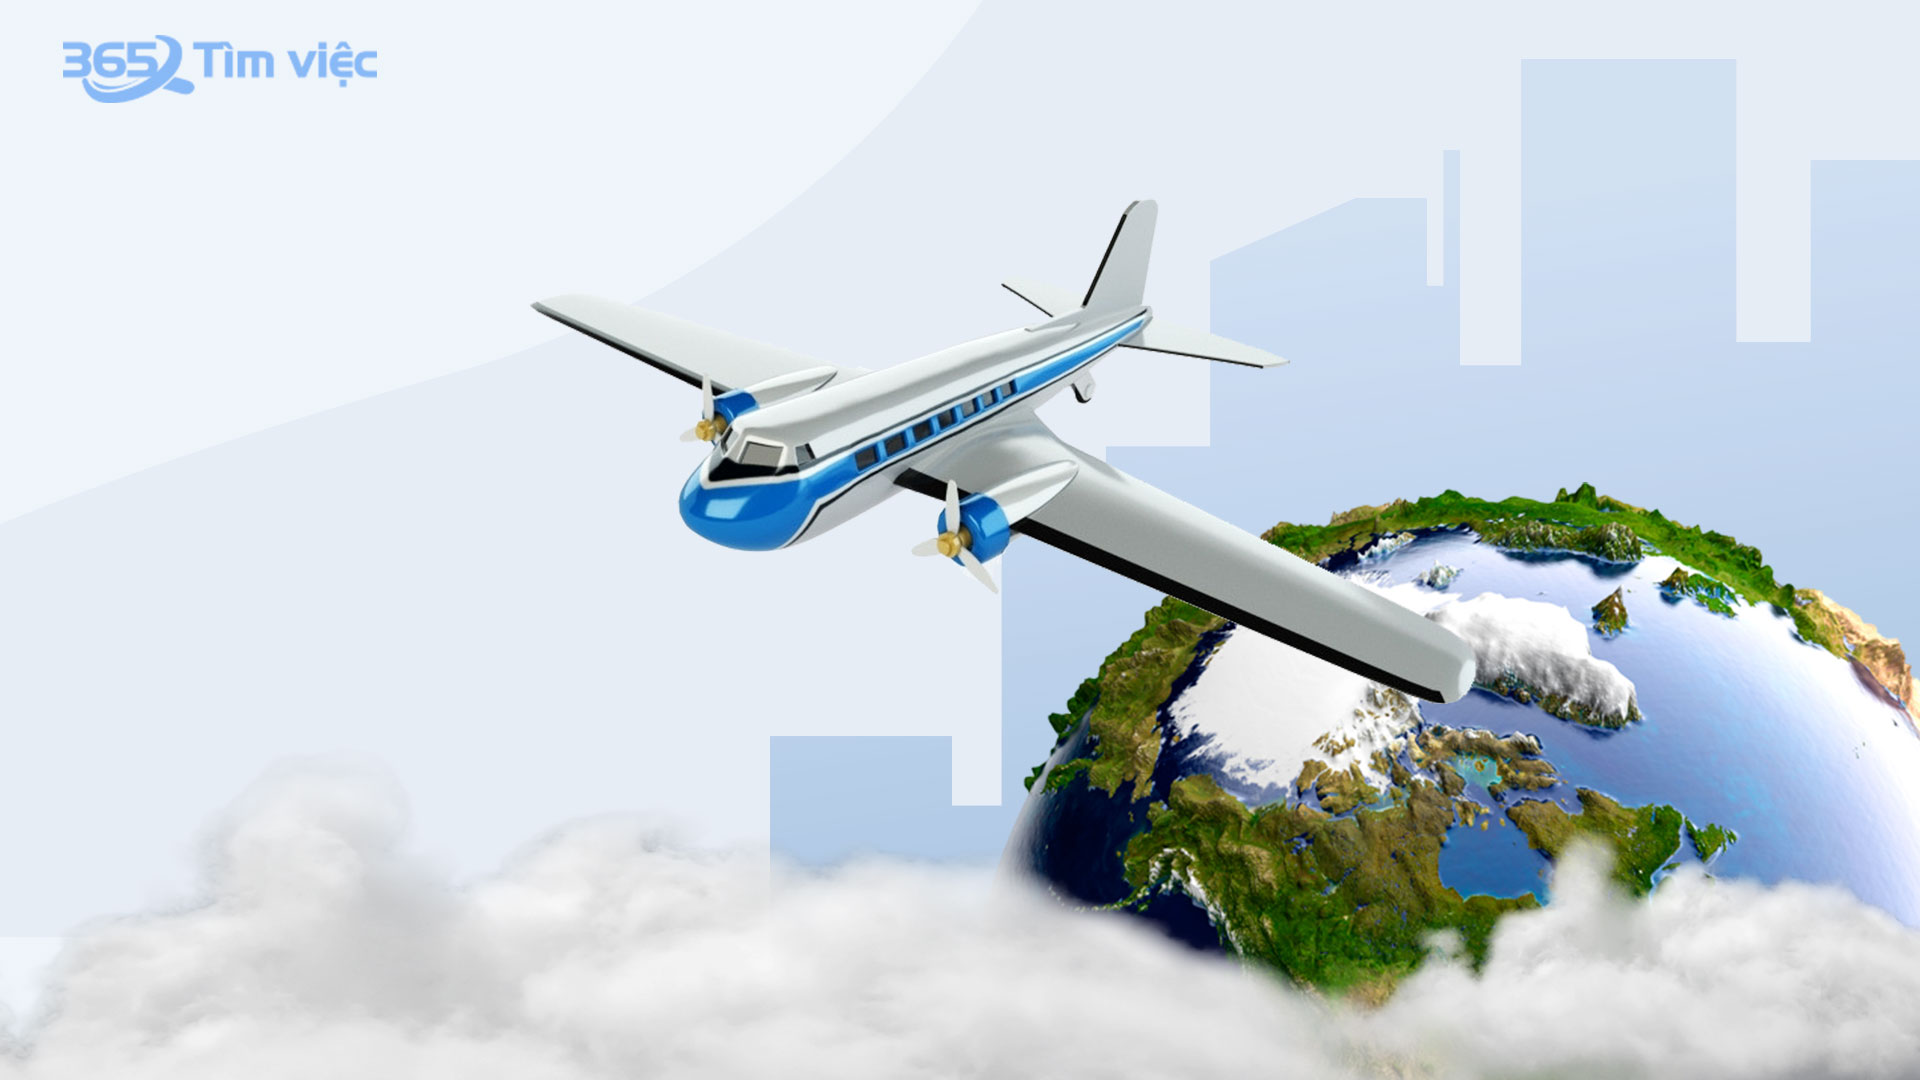 Quy trình giao nhận hàng hóa xuất nhập khẩu bằng đường hàng không